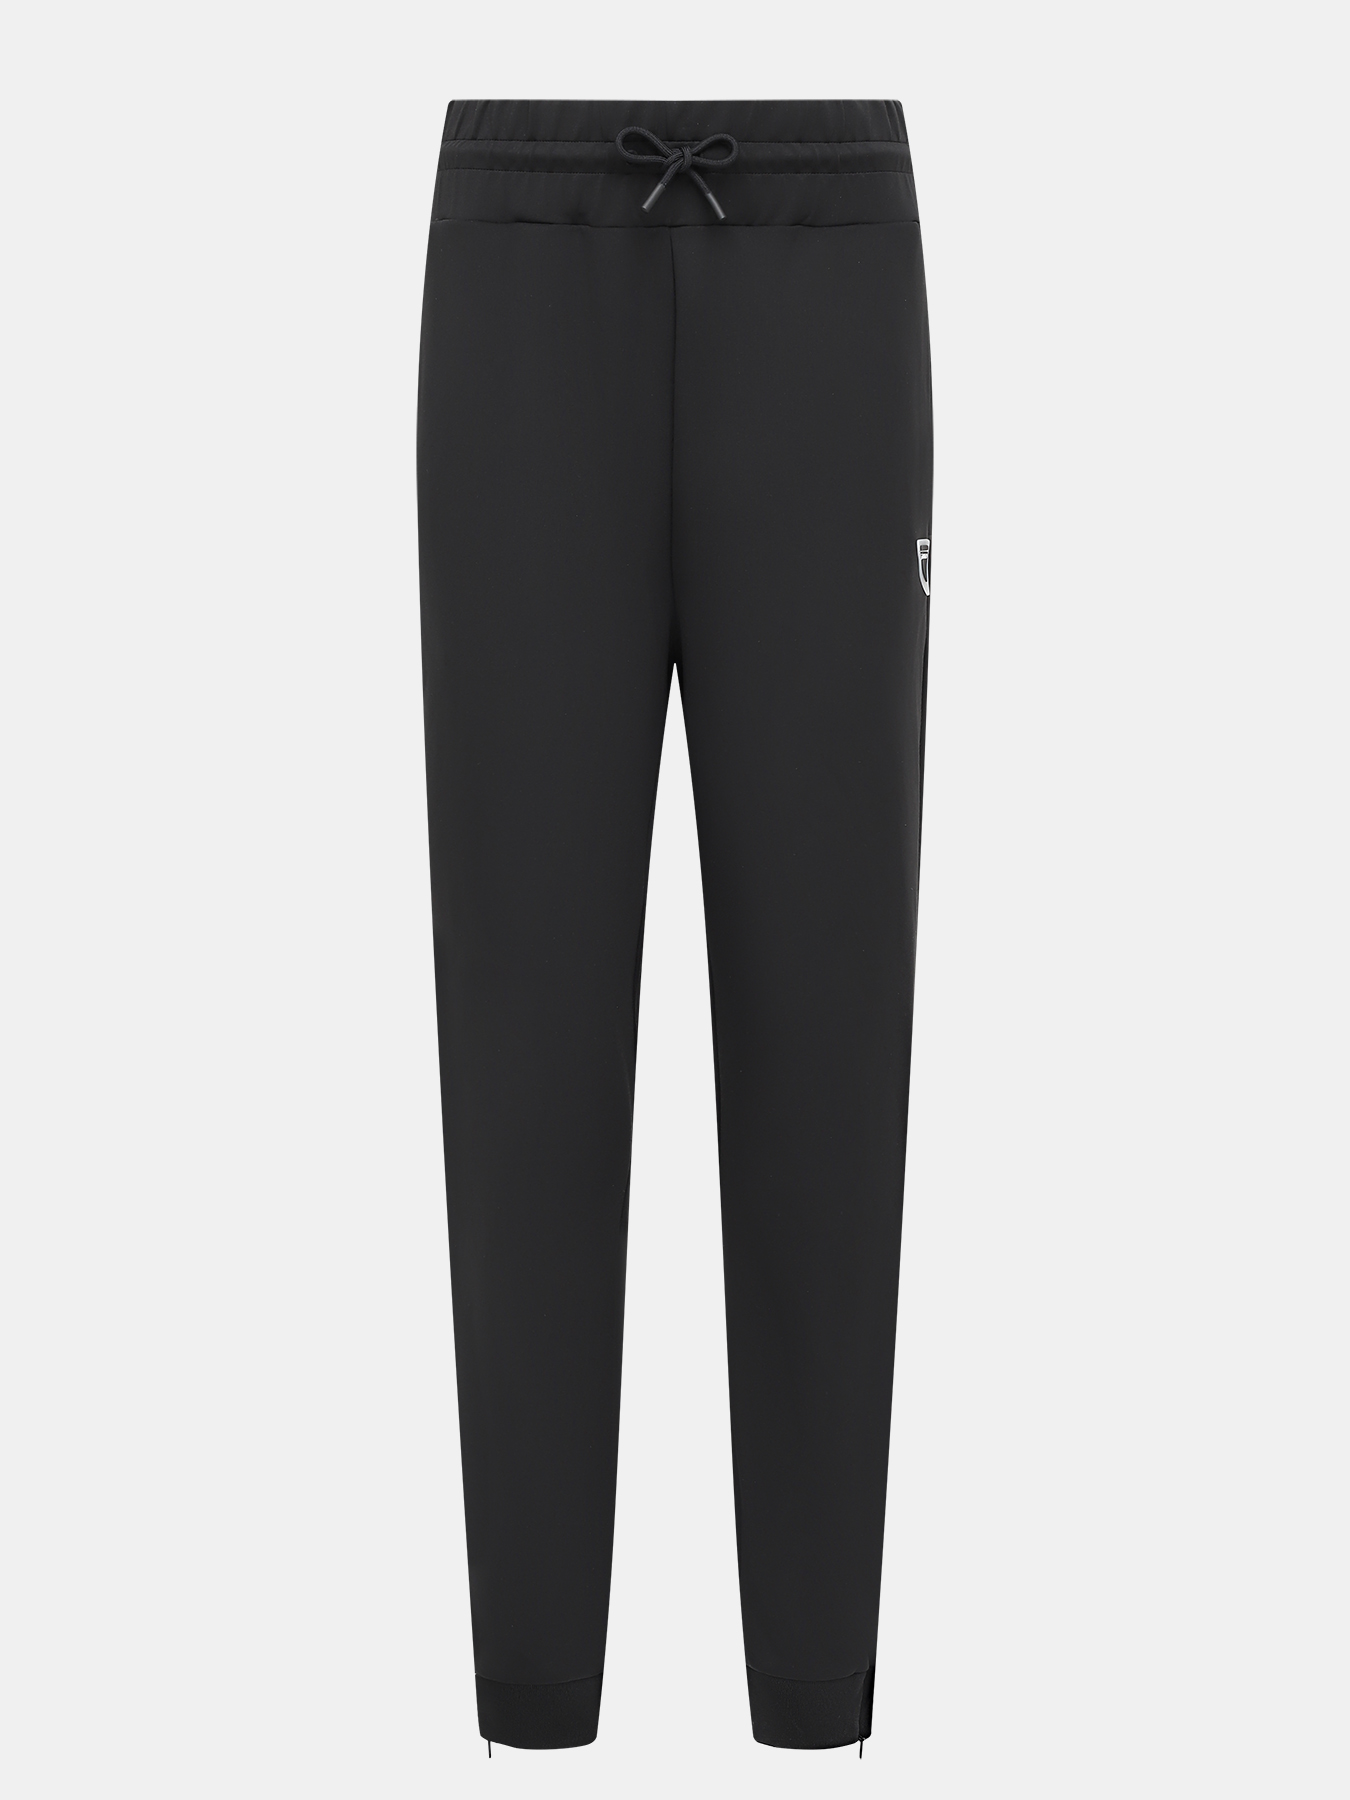 Спортивные брюки Narcy HUGO 420599-044, цвет черный, размер 46-48 - фото 1